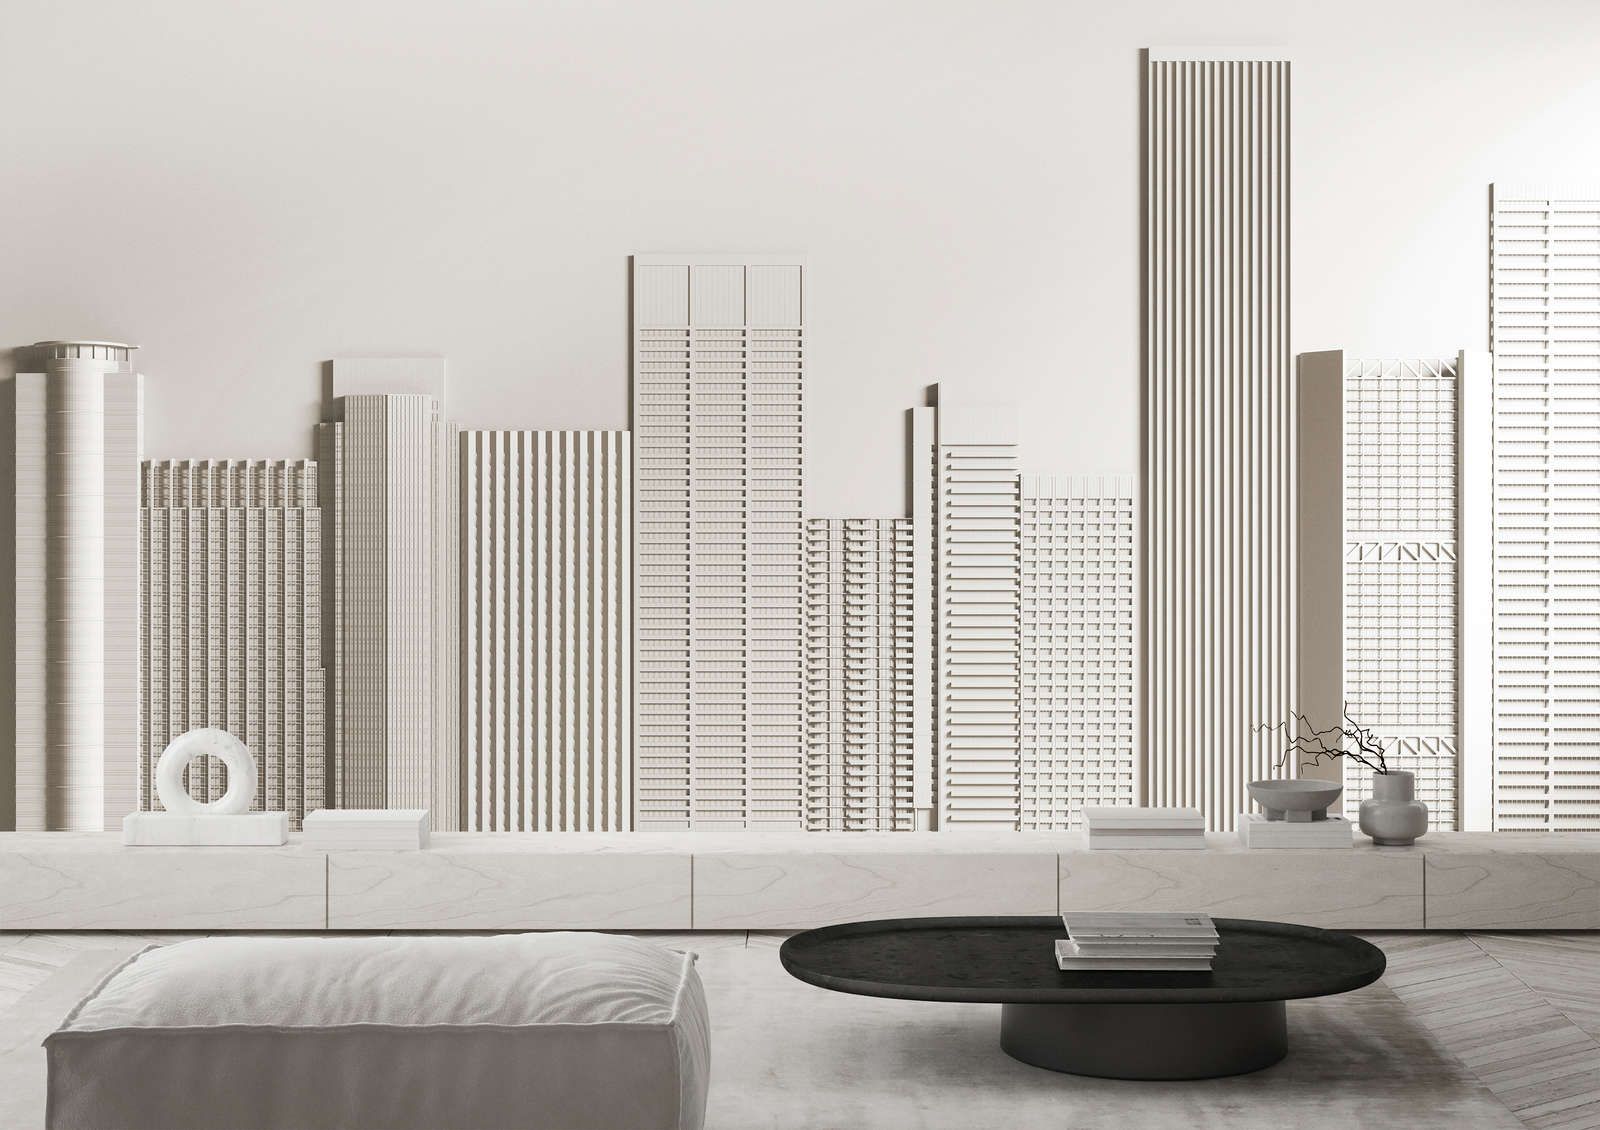             papier peint en papier panoramique »new skyline« - architecture avec gratte-ciel - intissé légèrement structuré
        